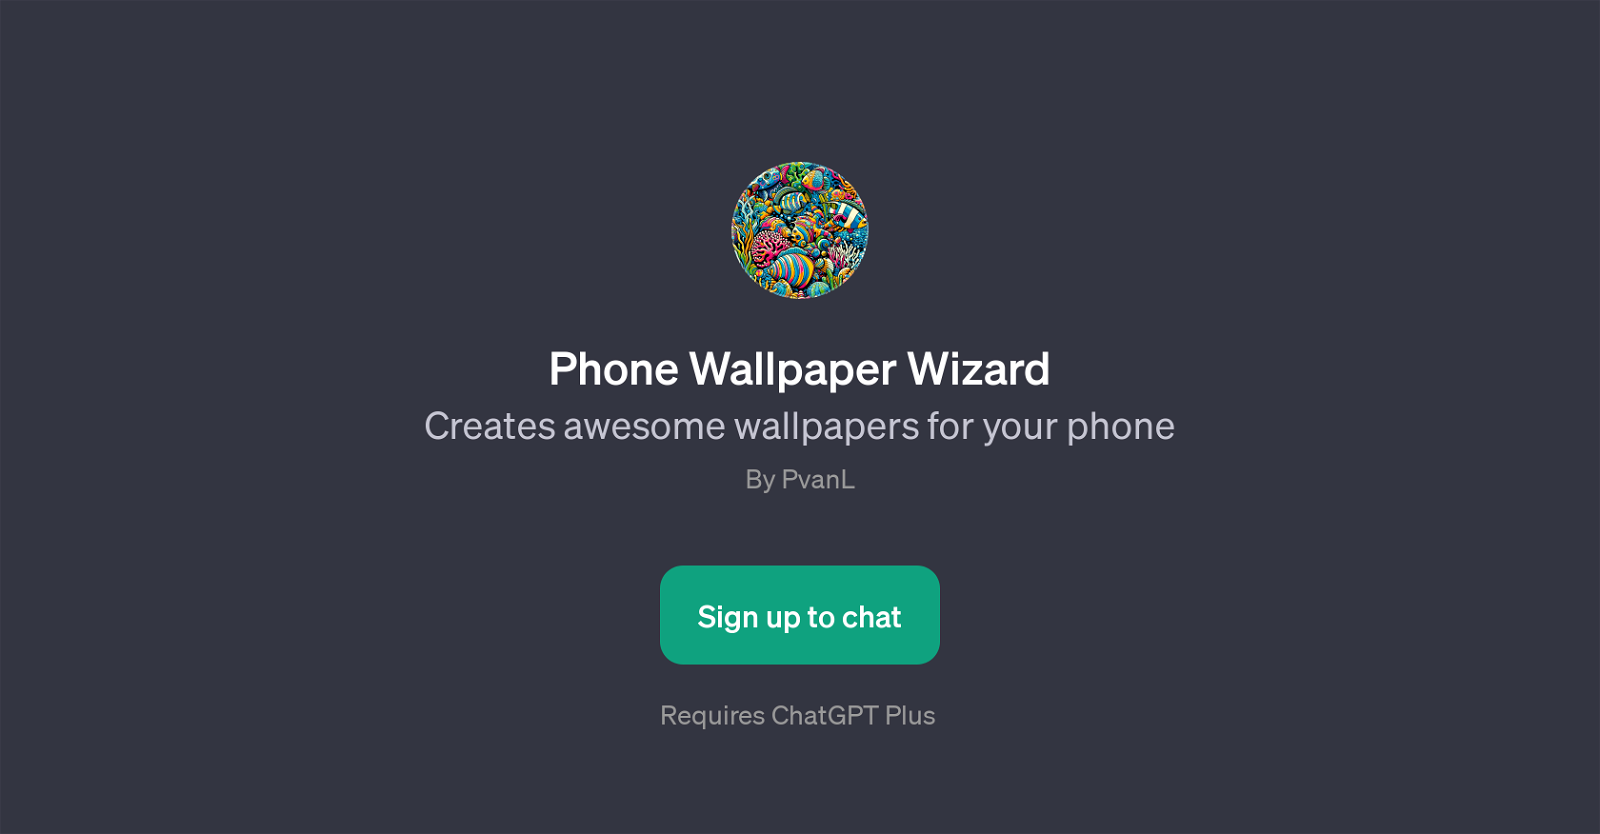 Phone Wallpaper Wizard website